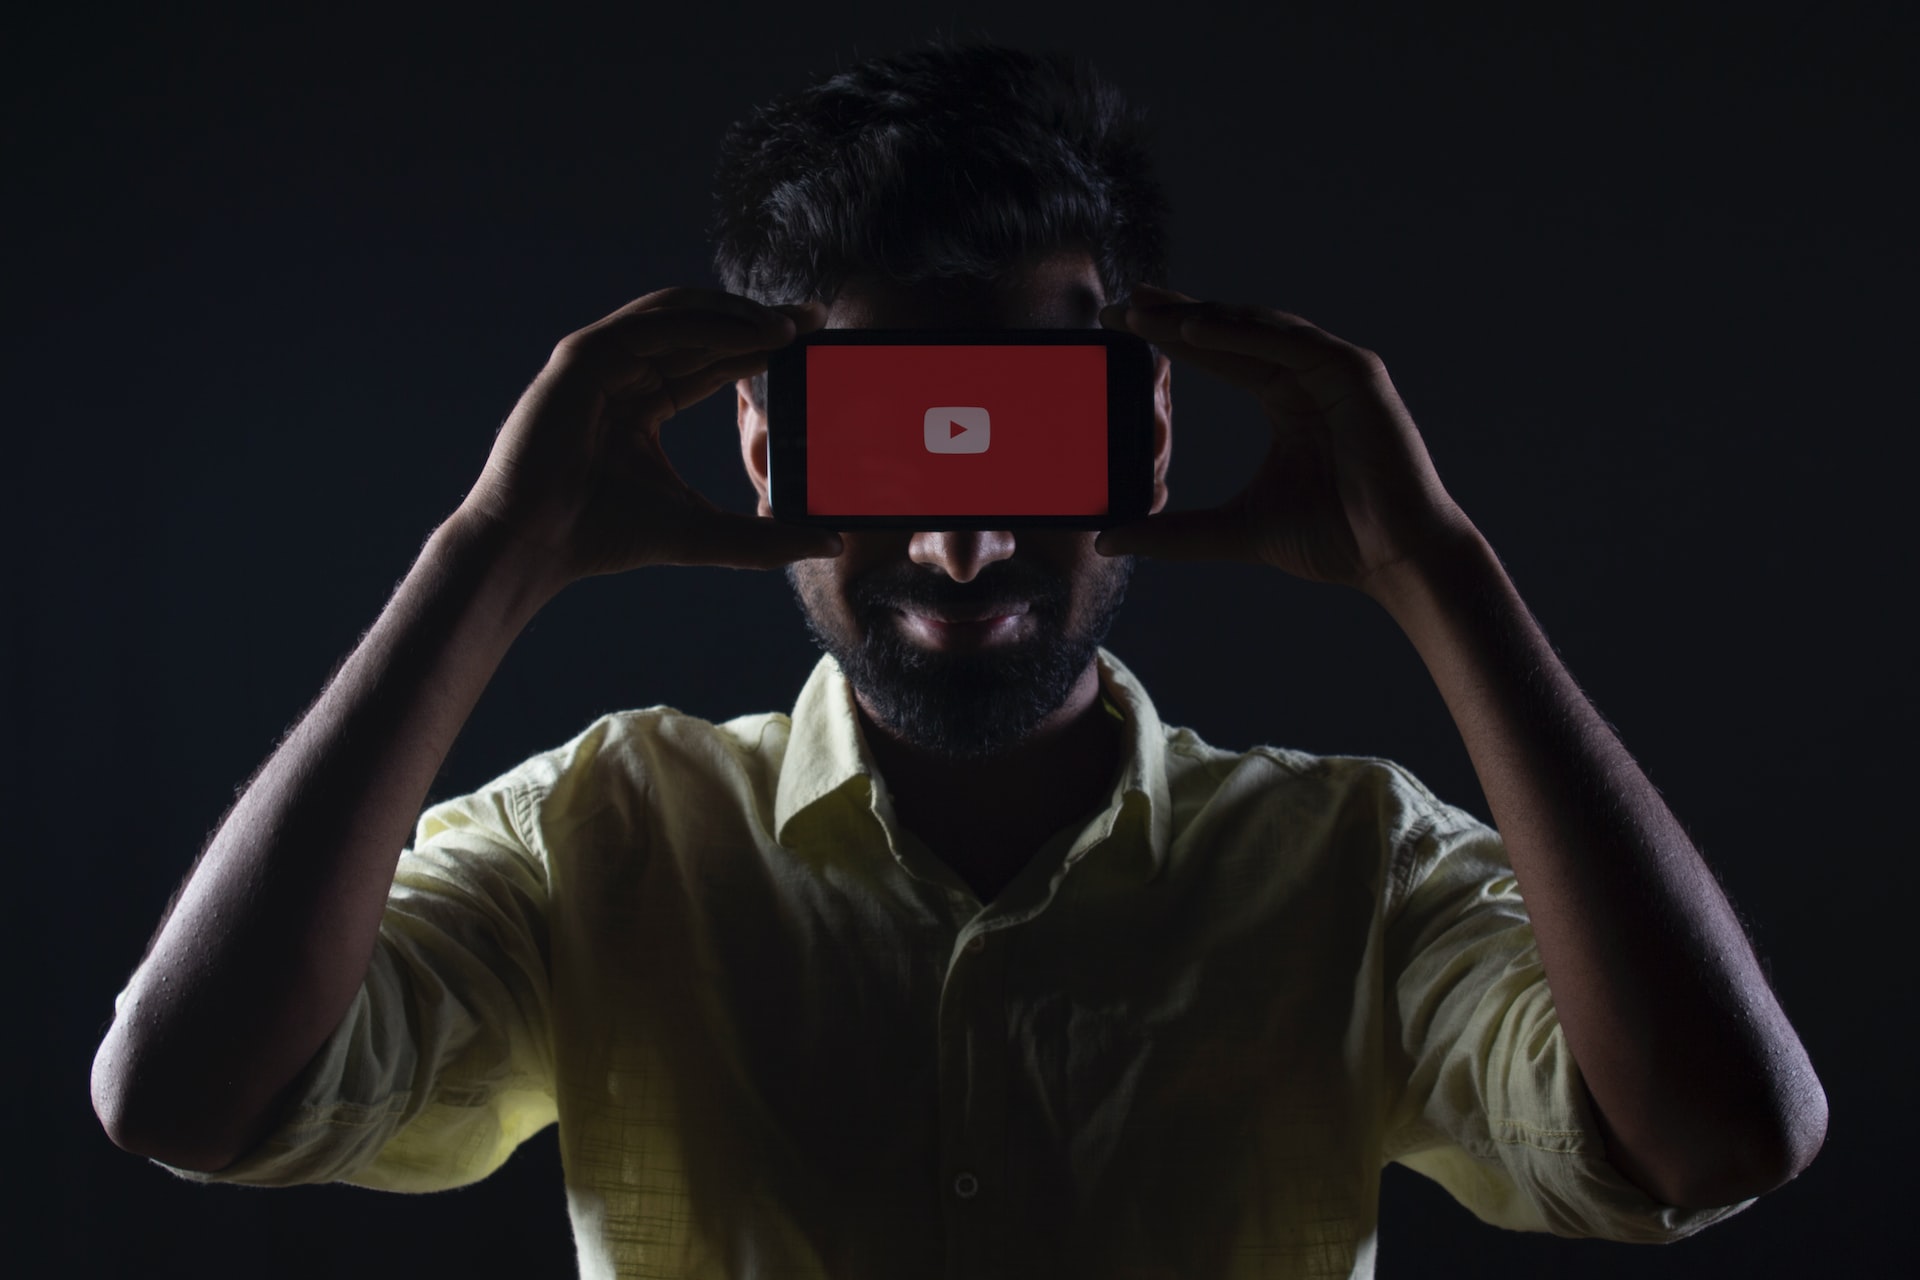 Foto mostra um homem segurando um smartphone na altura dos olhos: o celular tampa os olhos do homem da visão da câmera e, em sua tela, está o símbolo do YouTube